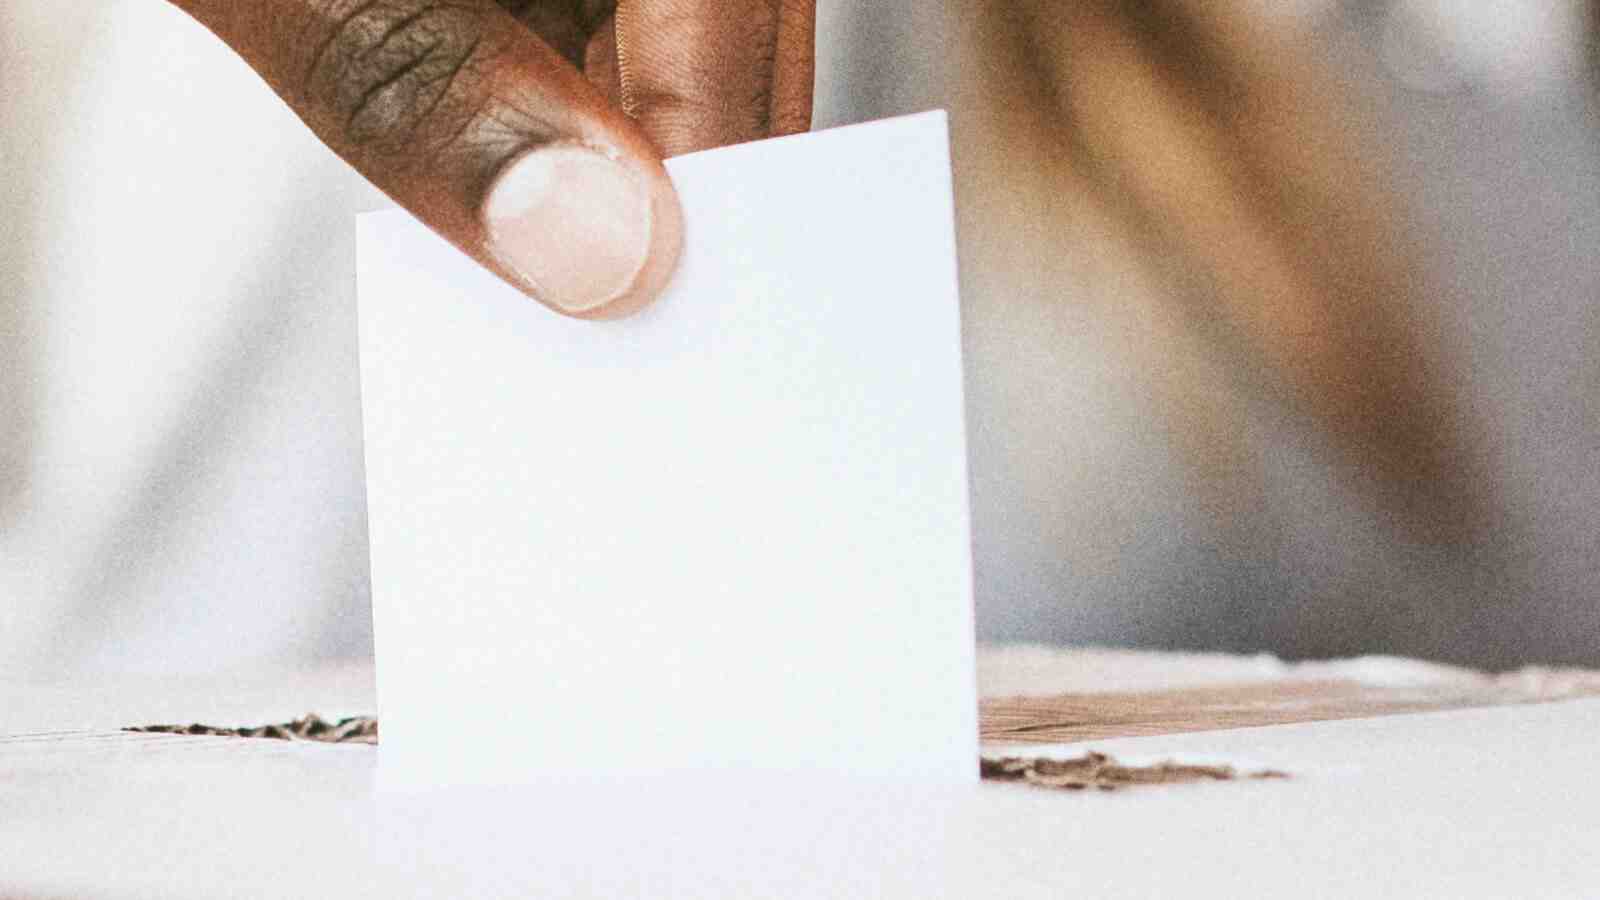 Stimmzettel in Box Wahlurne von Hand gehalten